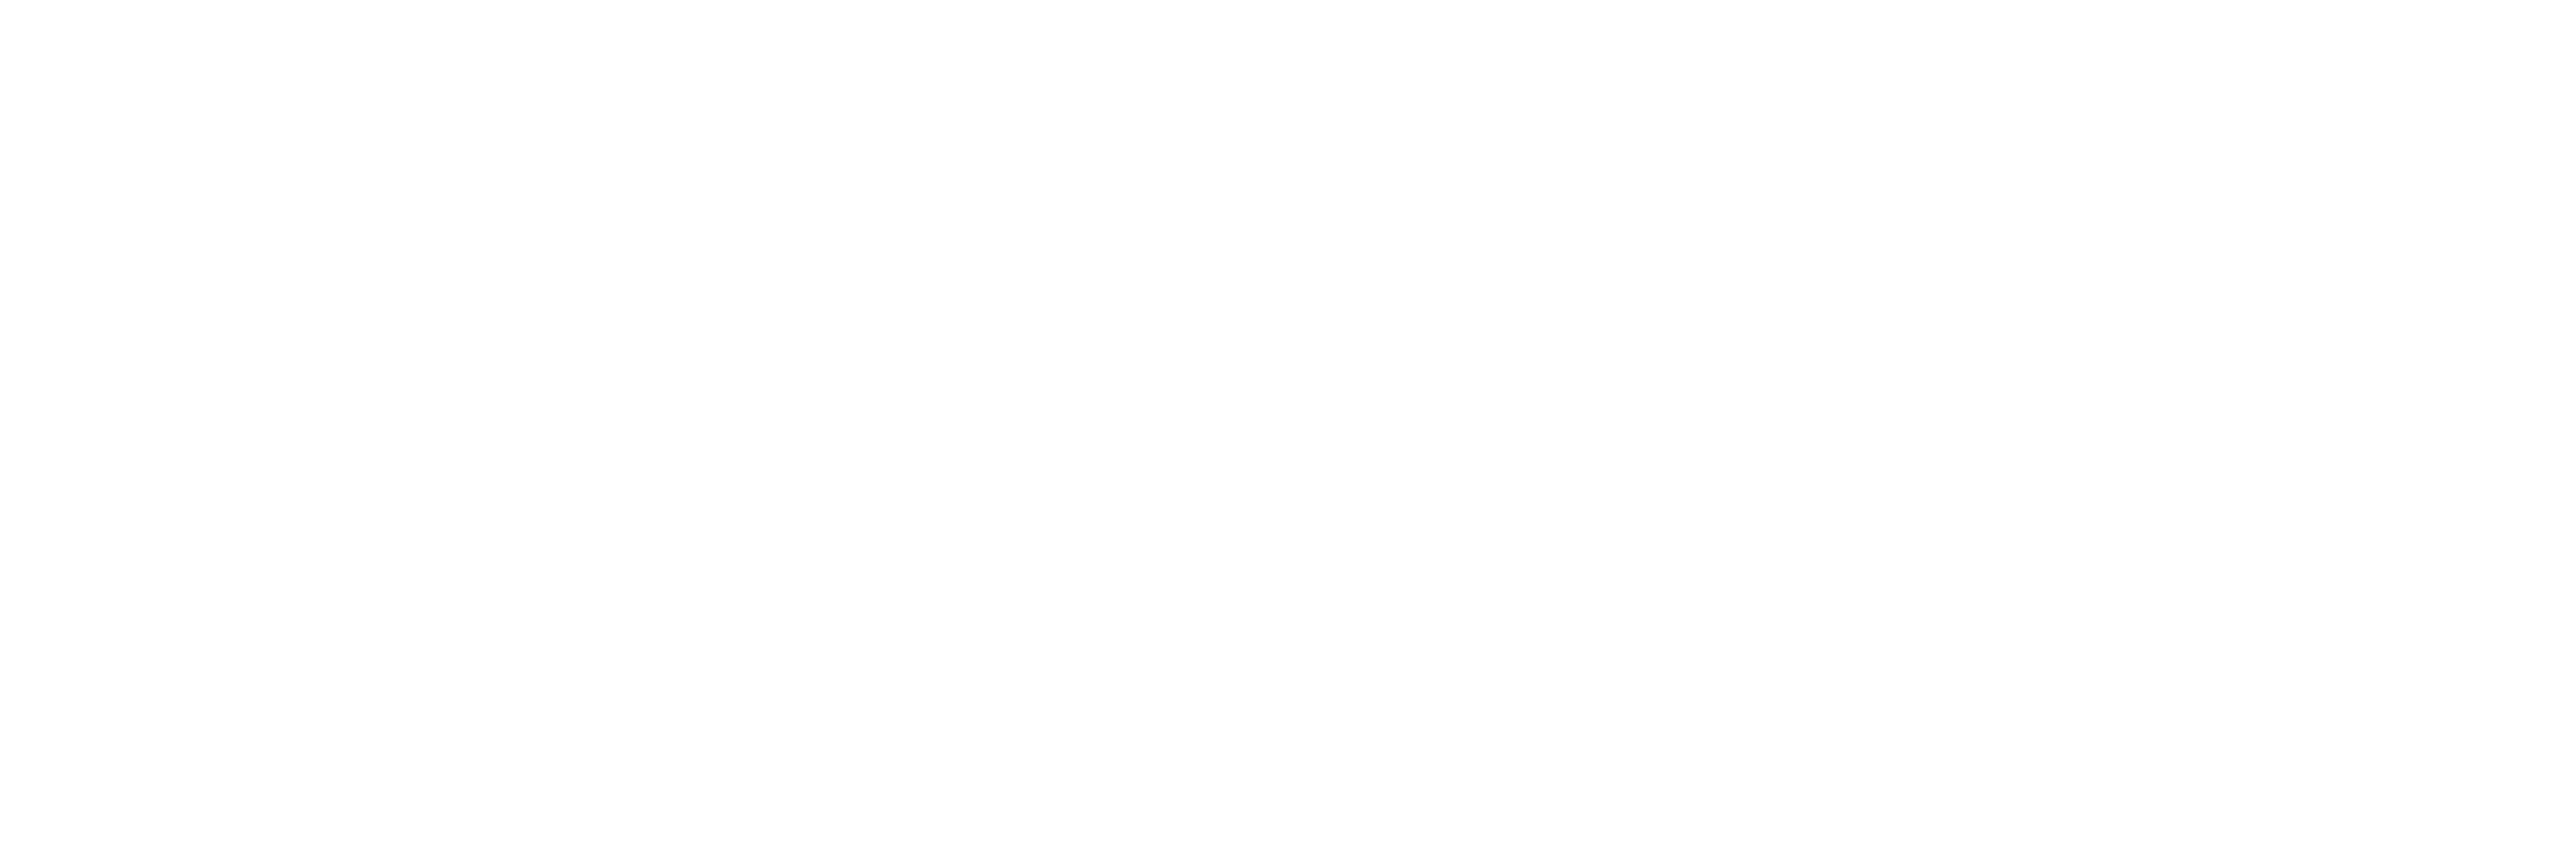 Agrícola Alaya